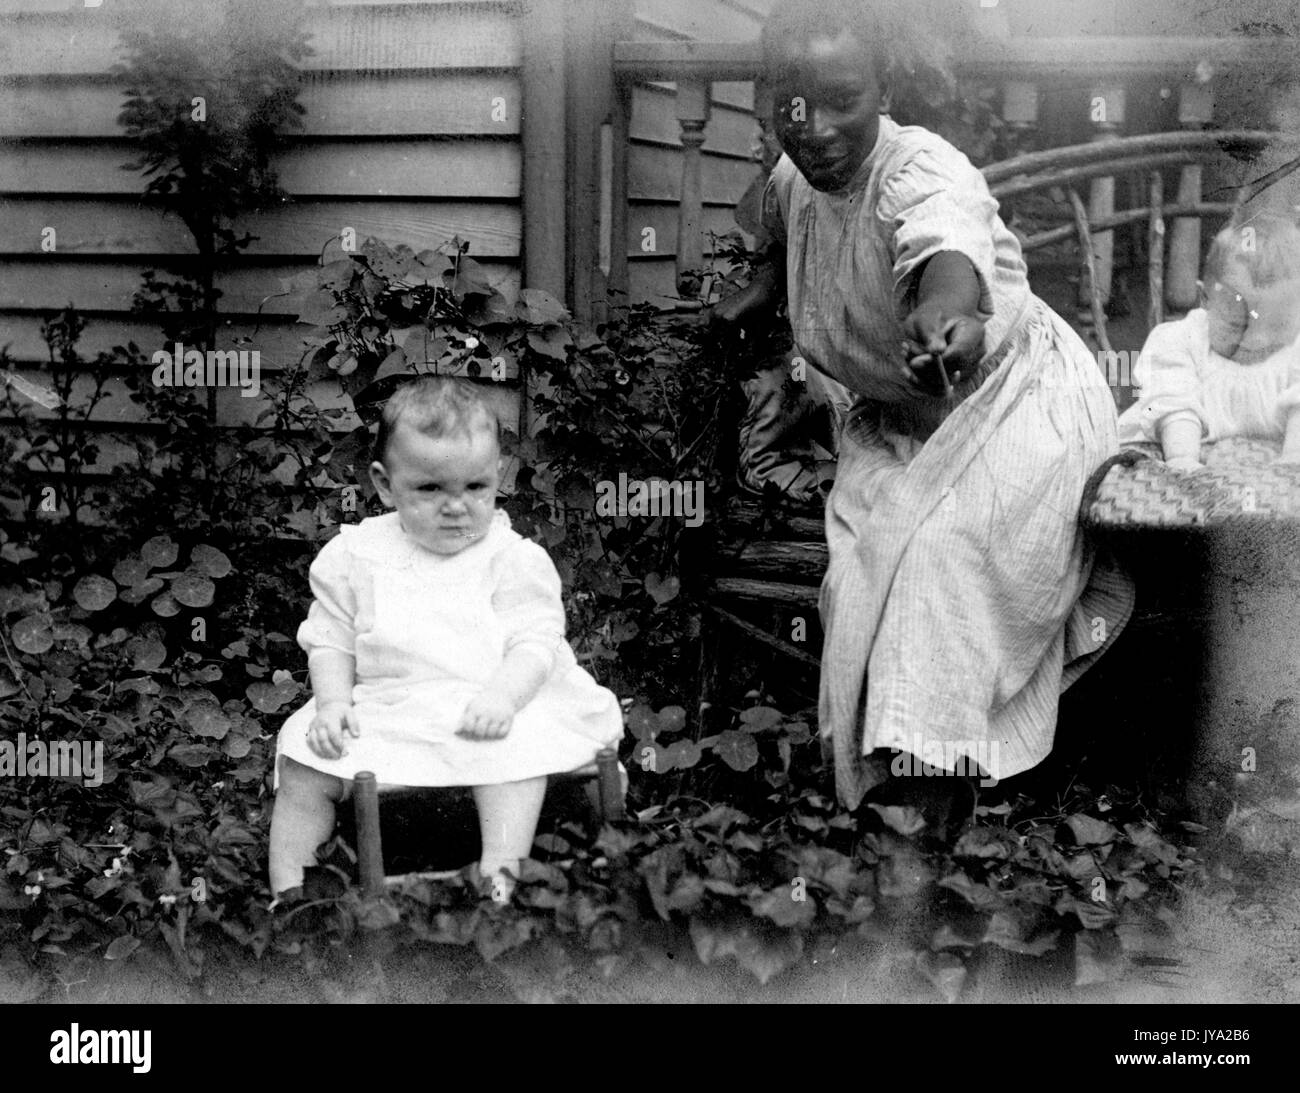 Niñera afroamericana en un jardín junto a una casa, vistiendo un traje normal y manteniendo una flor, con dos pequeños bebés caucásicos, 1910. Foto de stock